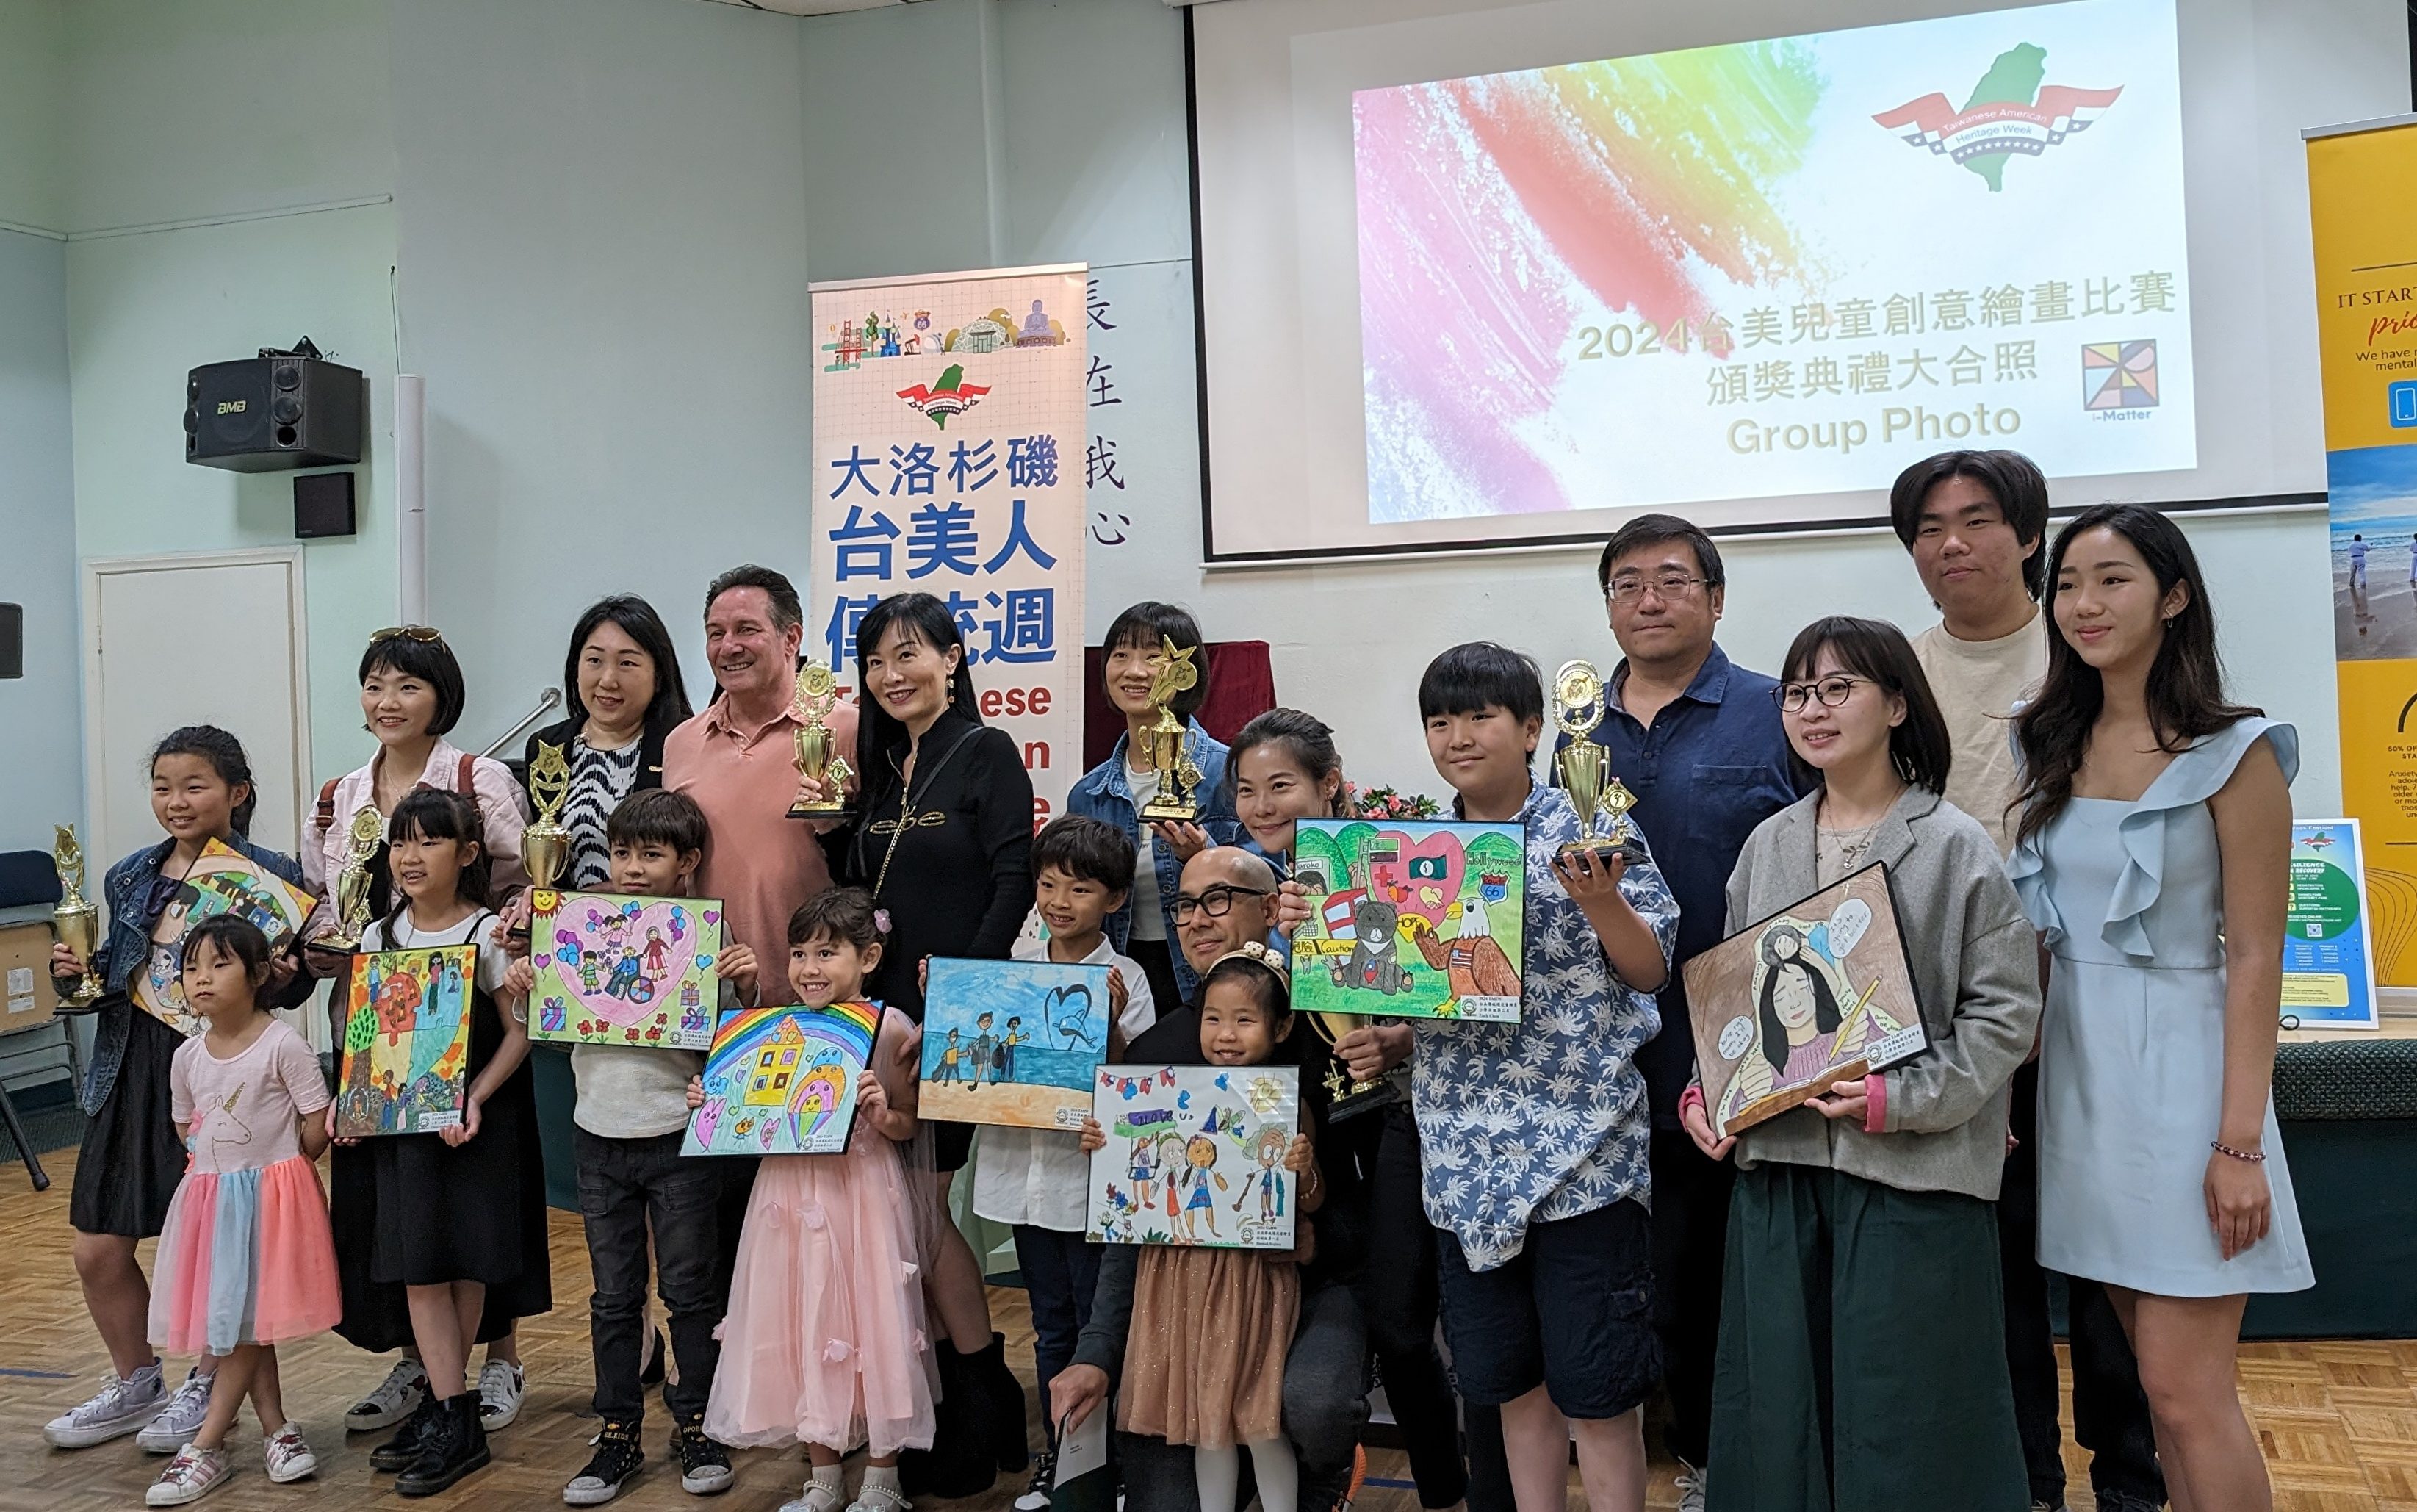 传统周儿童绘画比赛 “台美合作重建花莲”获奖